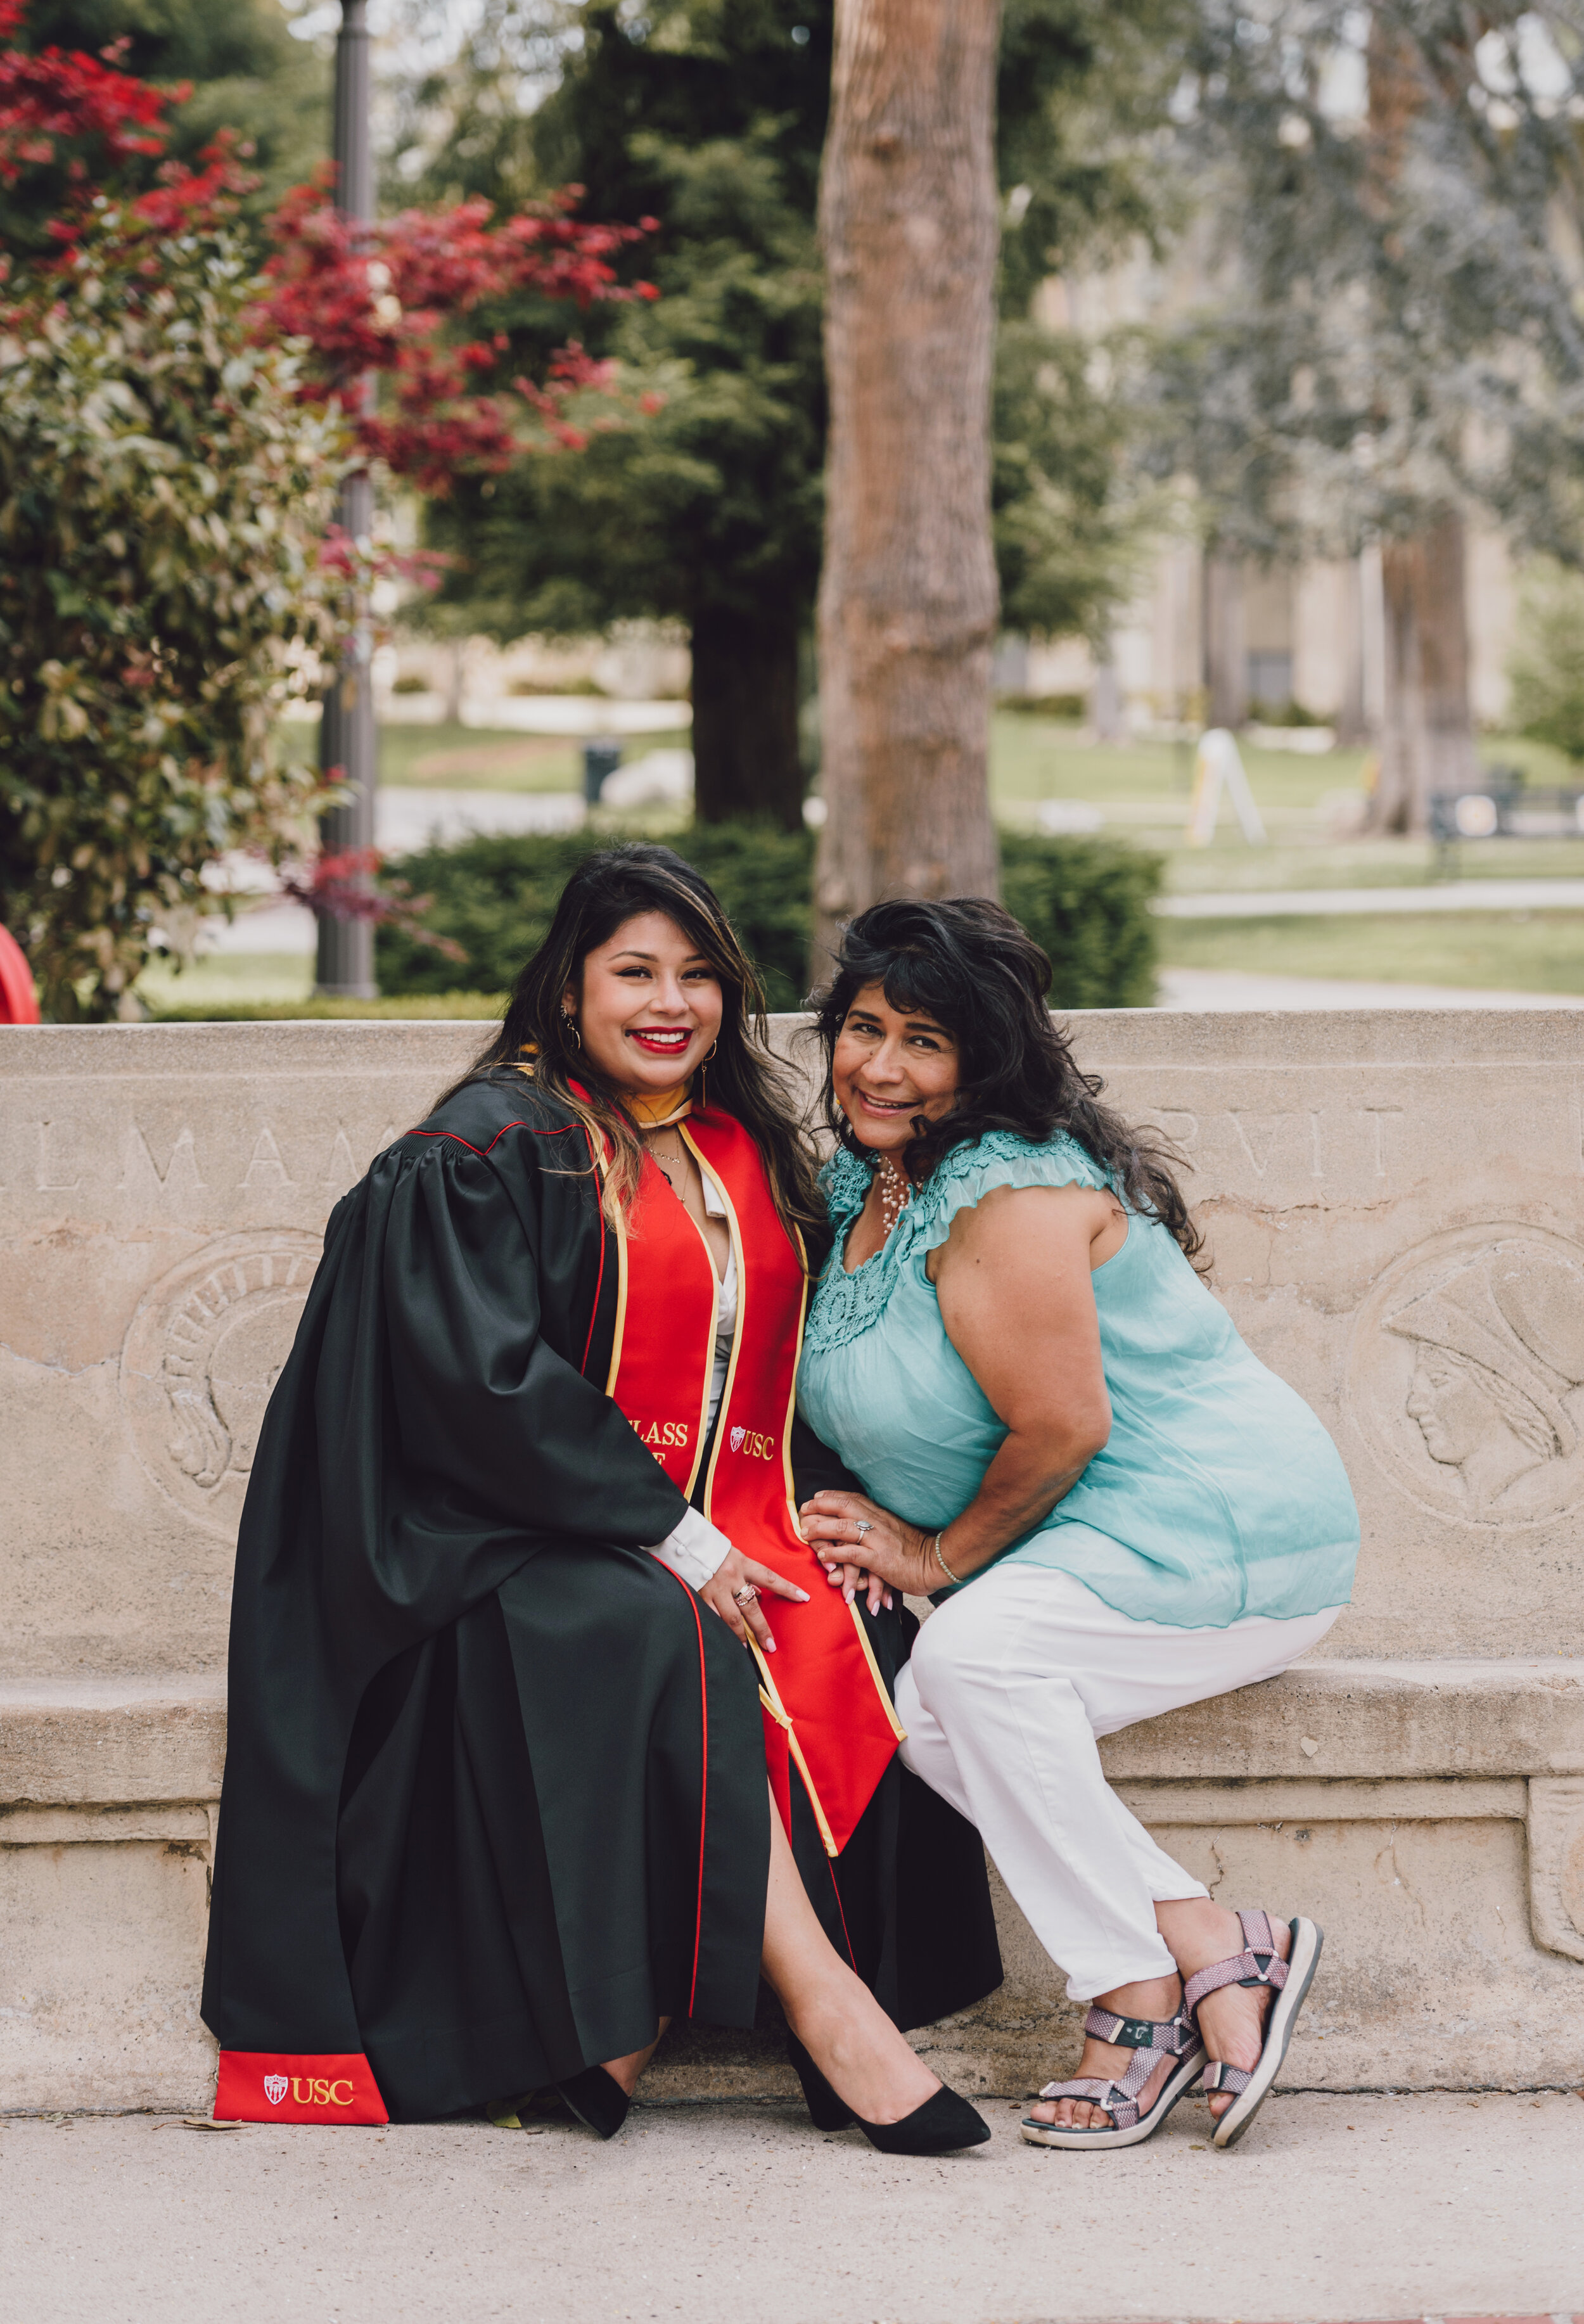 LosAngeles-Graduation-Portrait-Photographer-USC-23.jpg